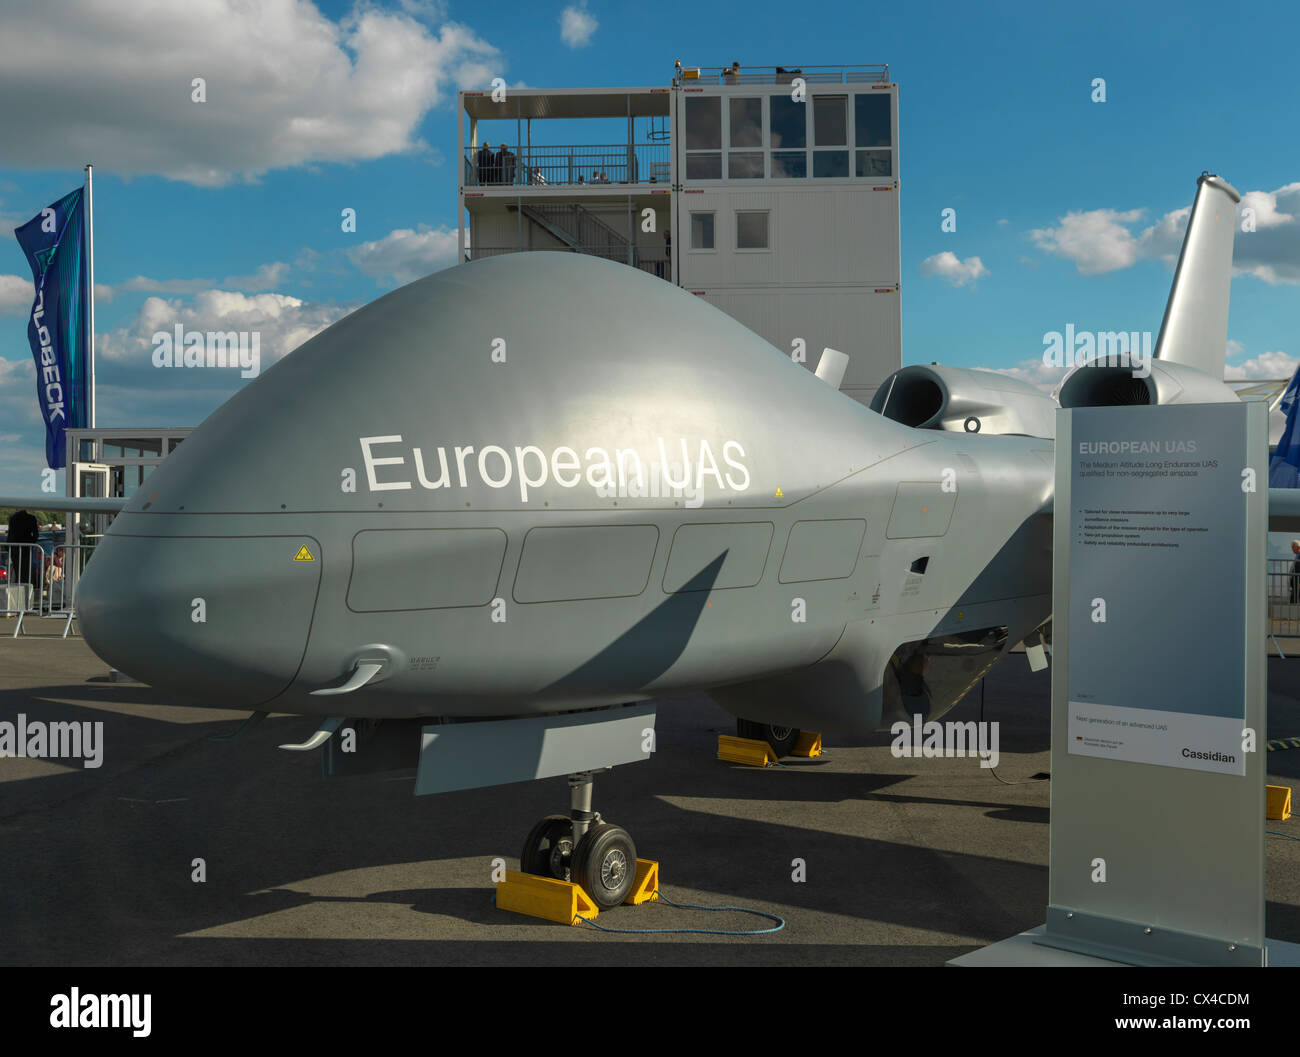 Cassidian (EADS) SAMU européen de l'afficheur pendant le drone ILA Berlin Air Show (Berlin). Photo numérique Hasselblad haute résolution. Banque D'Images